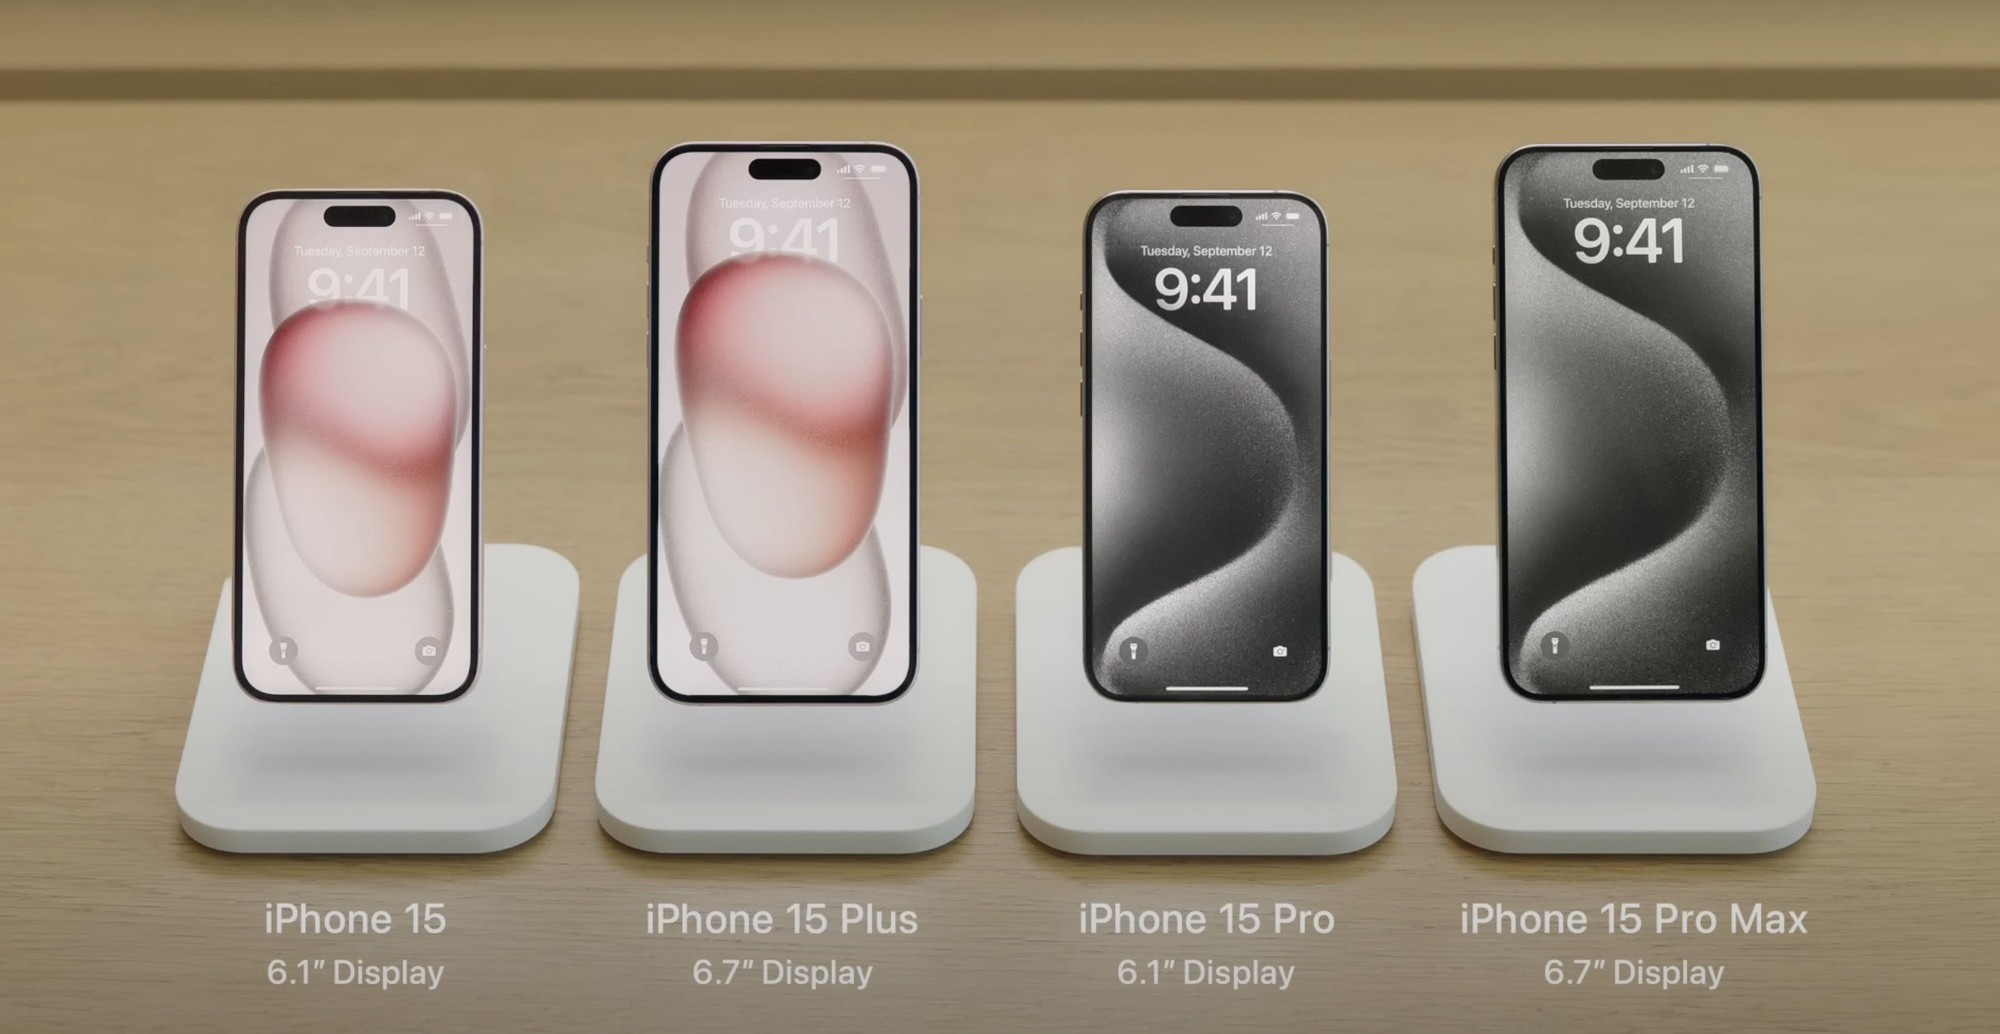 Nhìn vào bức ảnh này: Nếu không đọc chú thích, bạn có phân biệt được từng mẫu iPhone 15 hay không? - Ảnh 1.